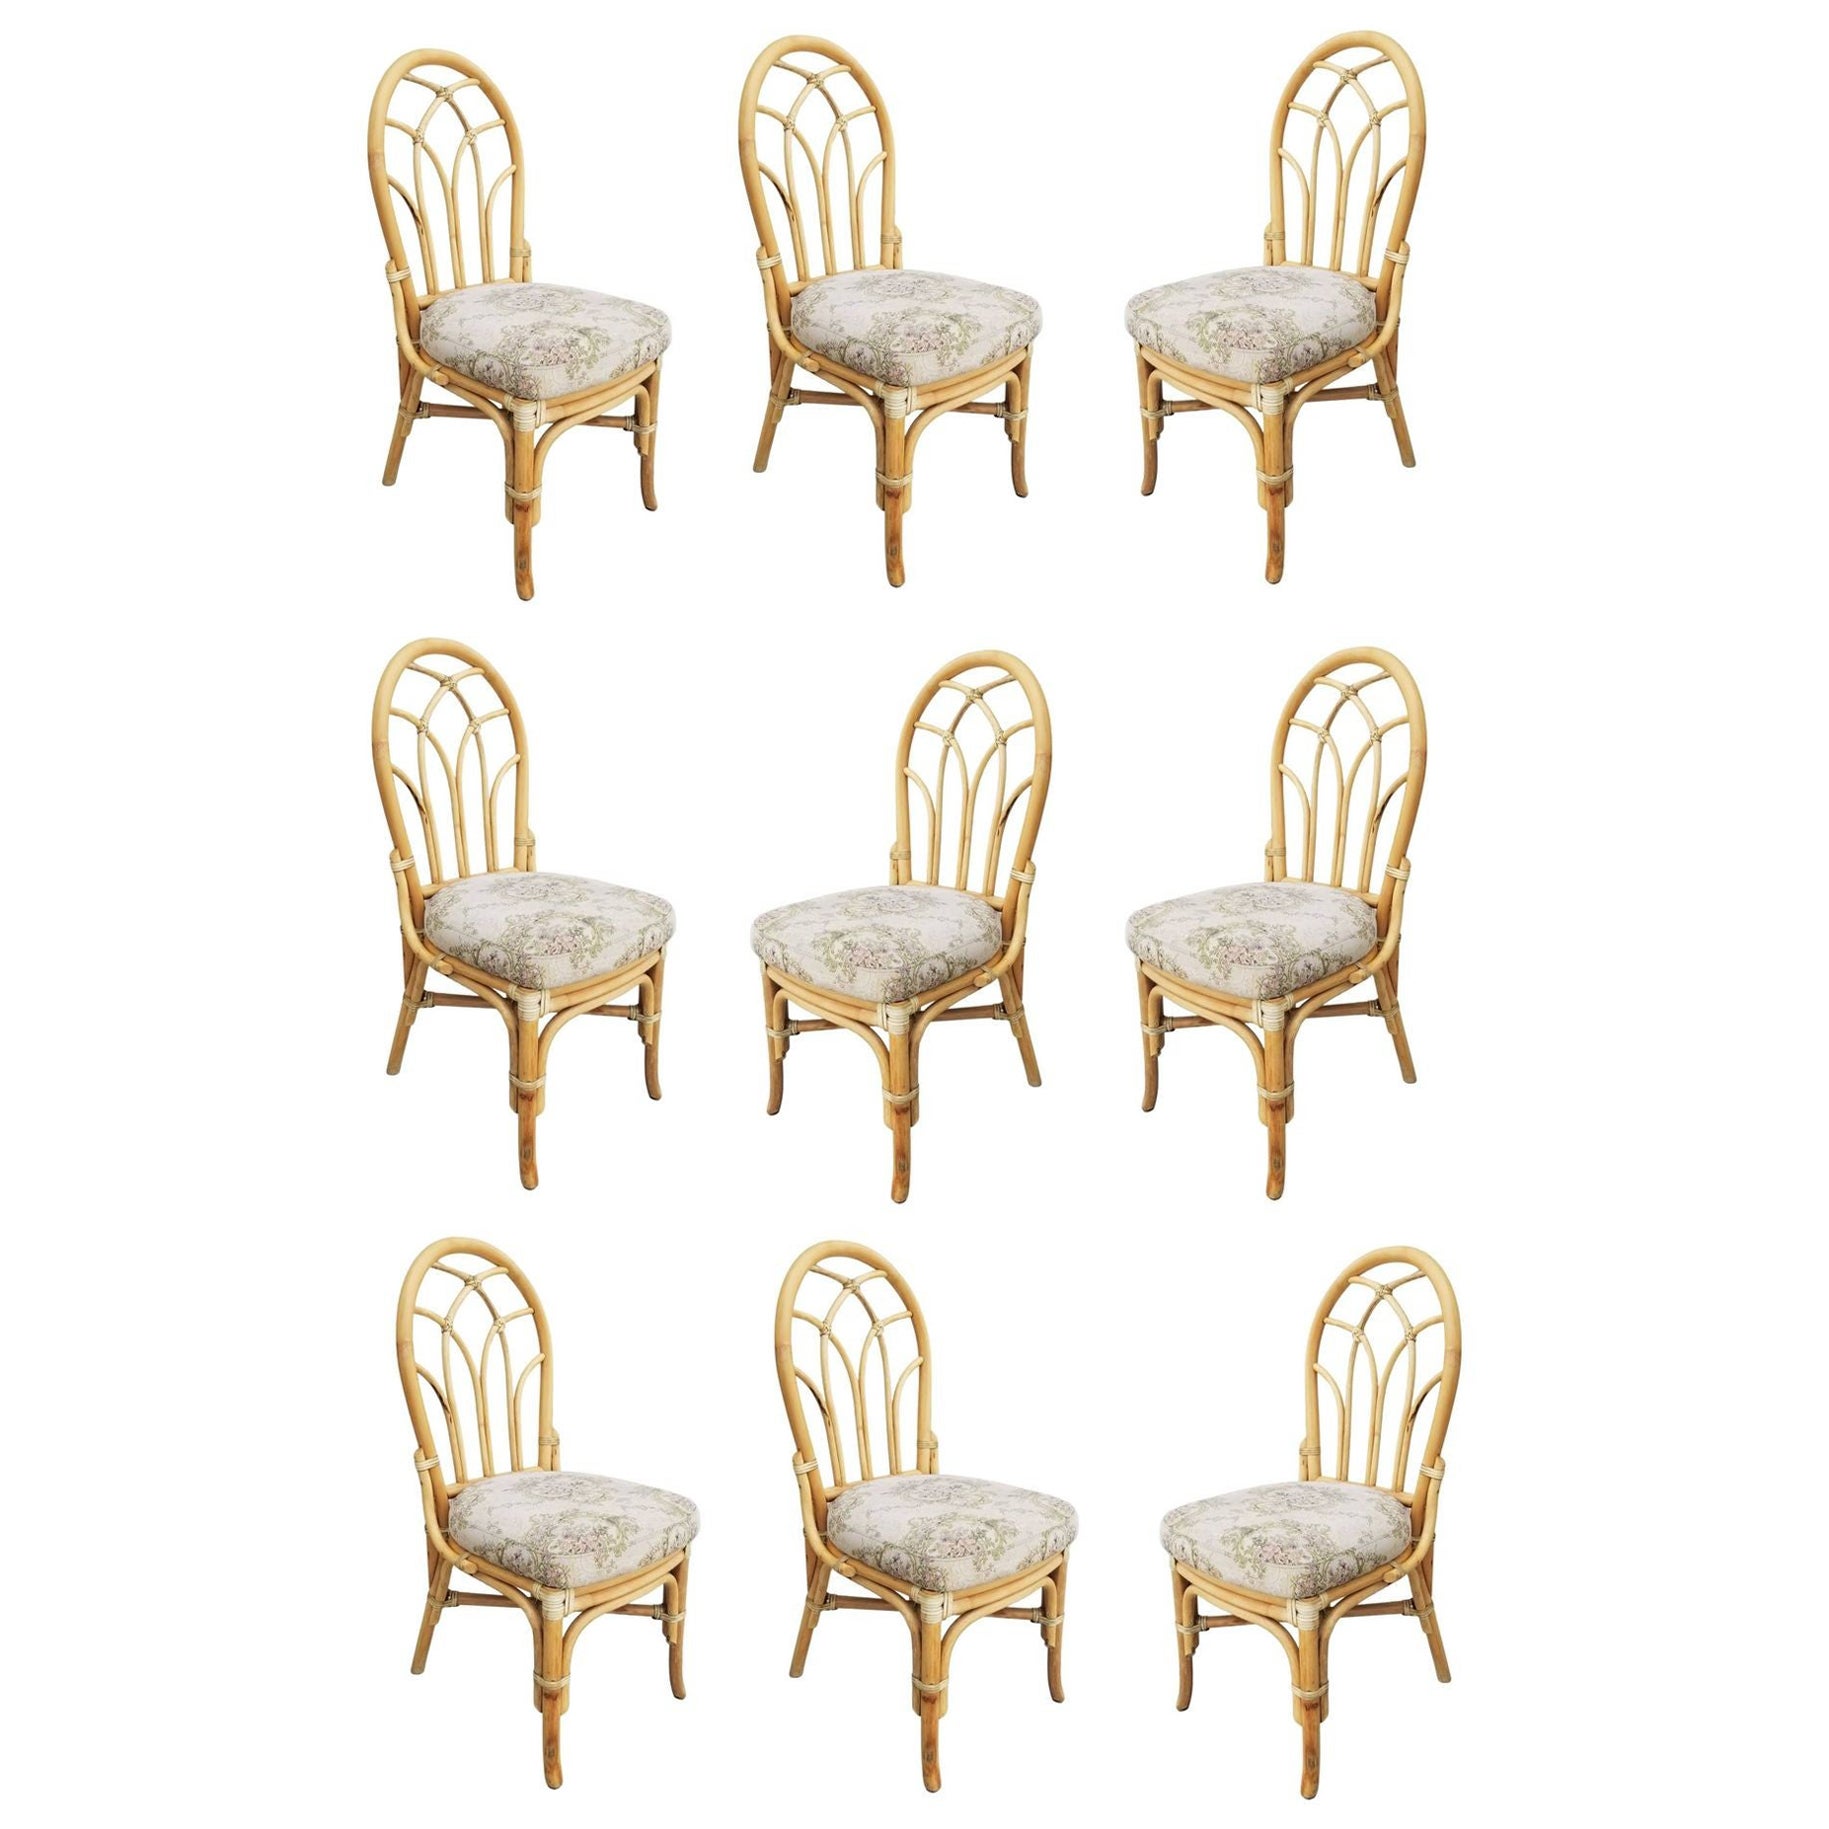 Chaises de salle à manger du milieu du siècle à dossier floral en rotin à 3 brins, ensemble de 9 chaises restaurées